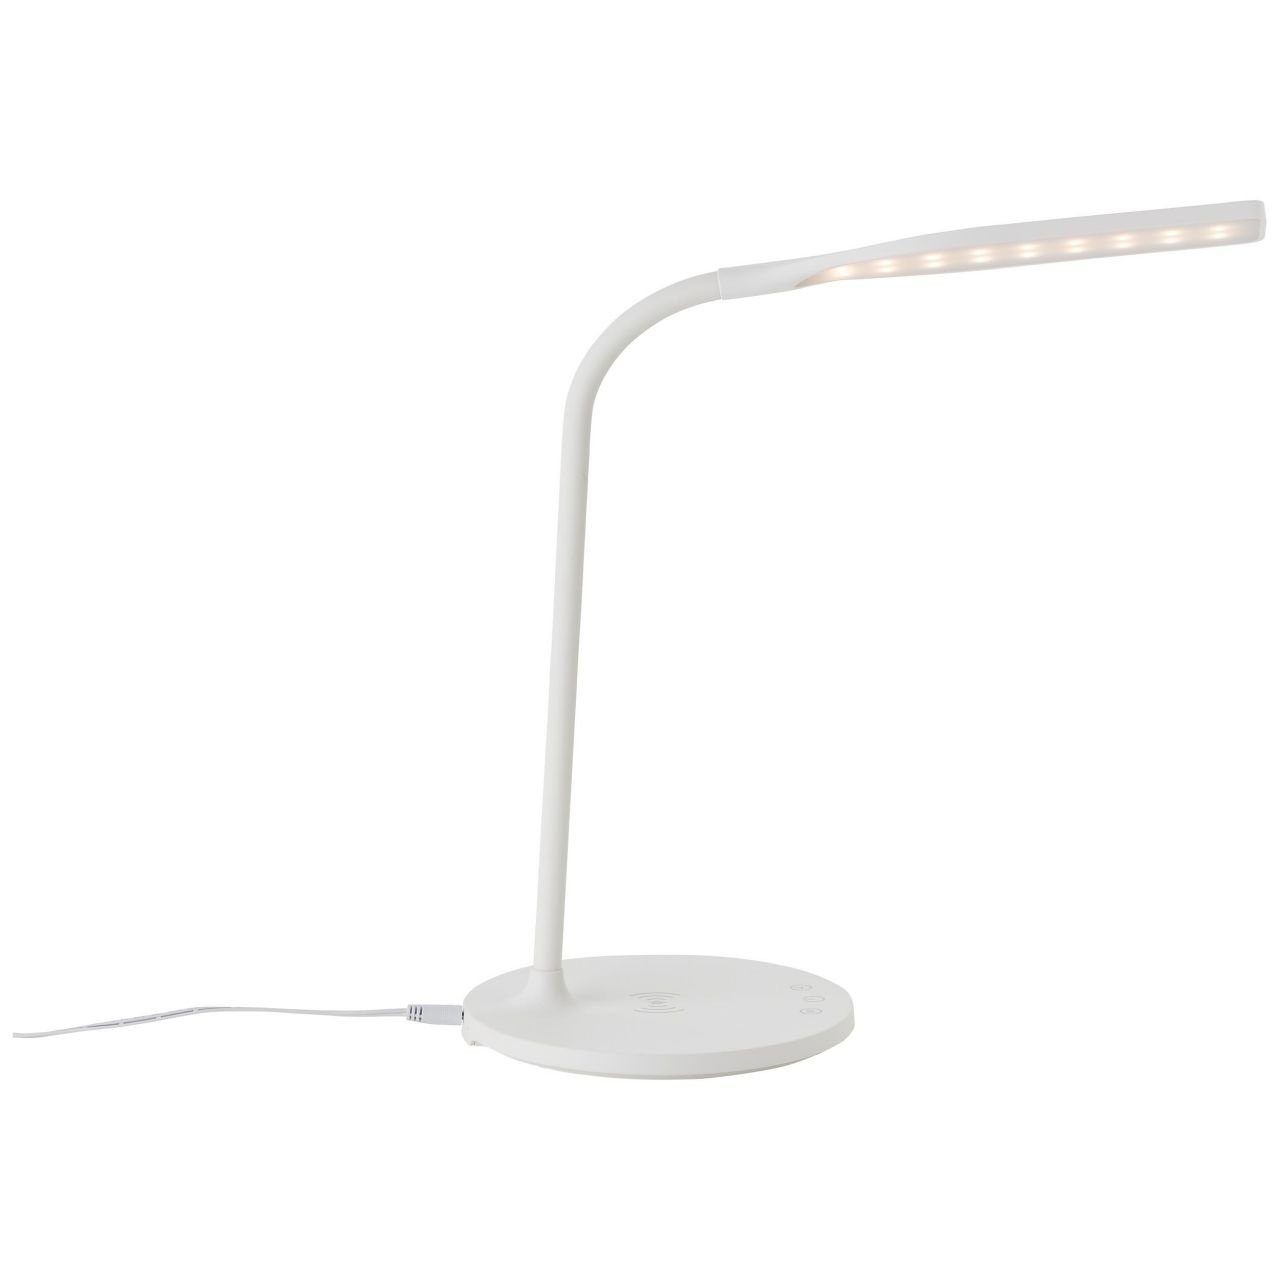 Tischleuchte LED Joni, Brilliant weiß, 3000-5400K, Tischleuchte int mit Joni Lampe, LED 1x Induktionsladeschale